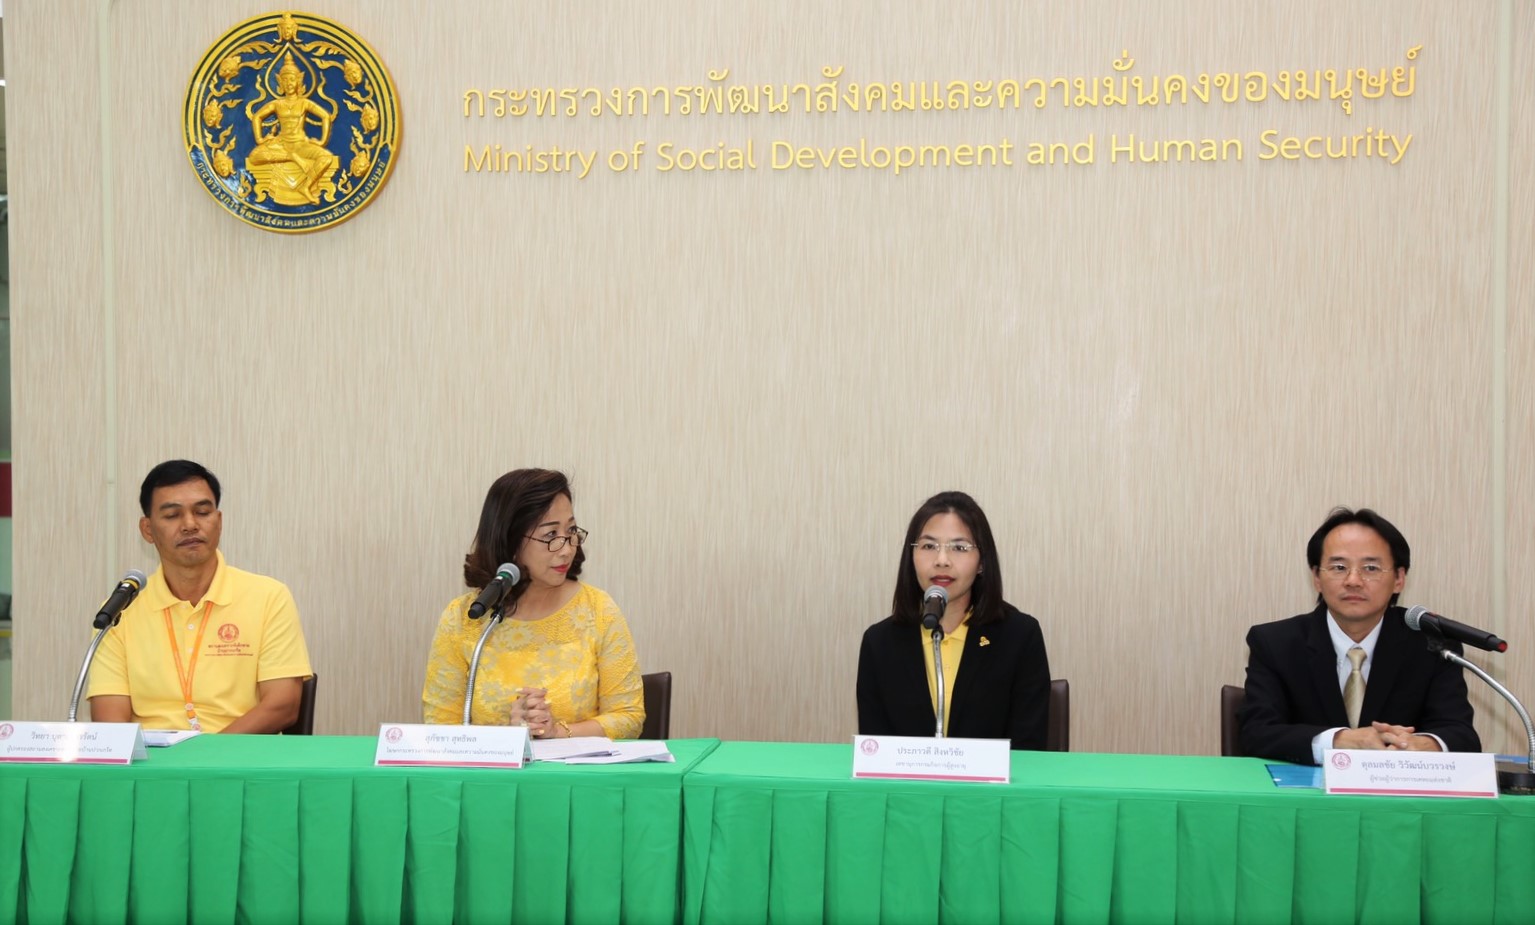 การแถลงผลการดำเนินงานตามภารกิจสำคัญของกระทรวงการพัฒนาสังคมและความมั่นคงของมนุษย์ (พม.) พร้อมแถลงในประเด็นการจัดงาน Thailand Social Expo 2018